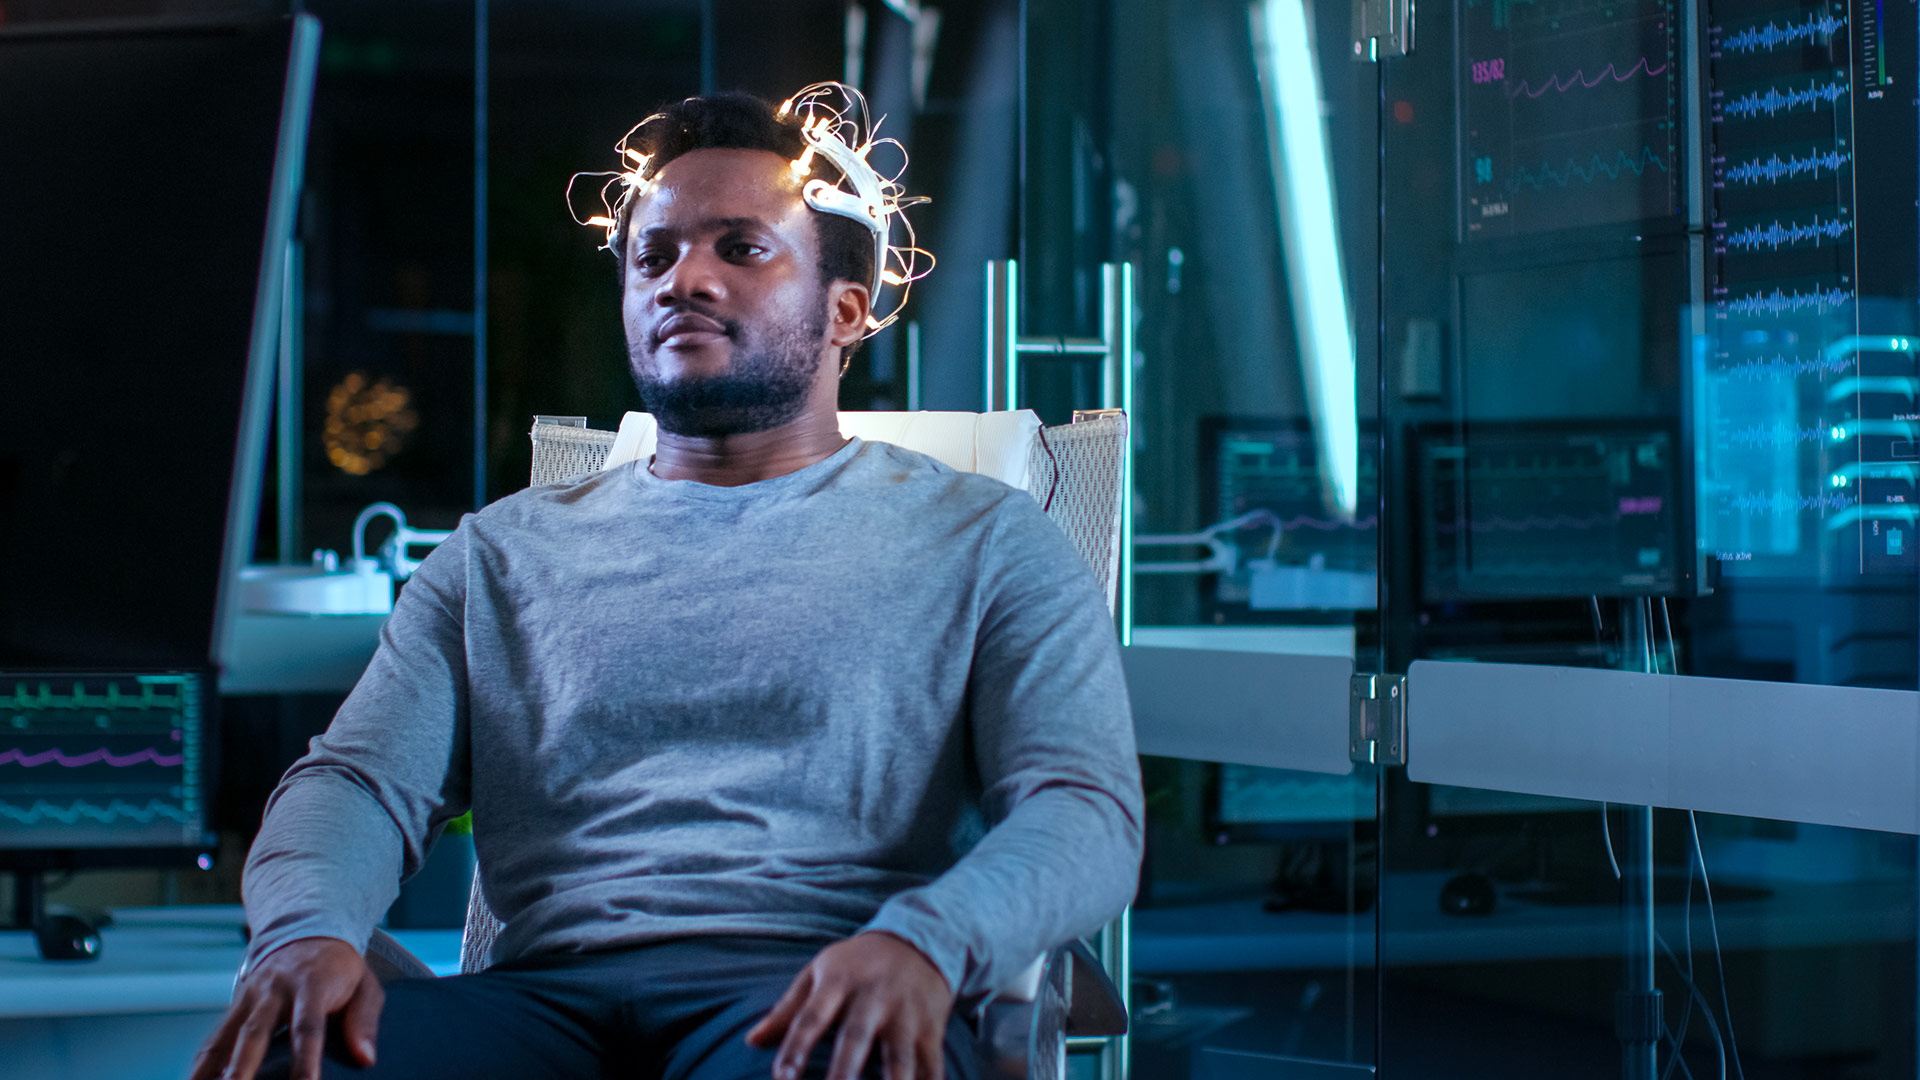 Man having an EEG test